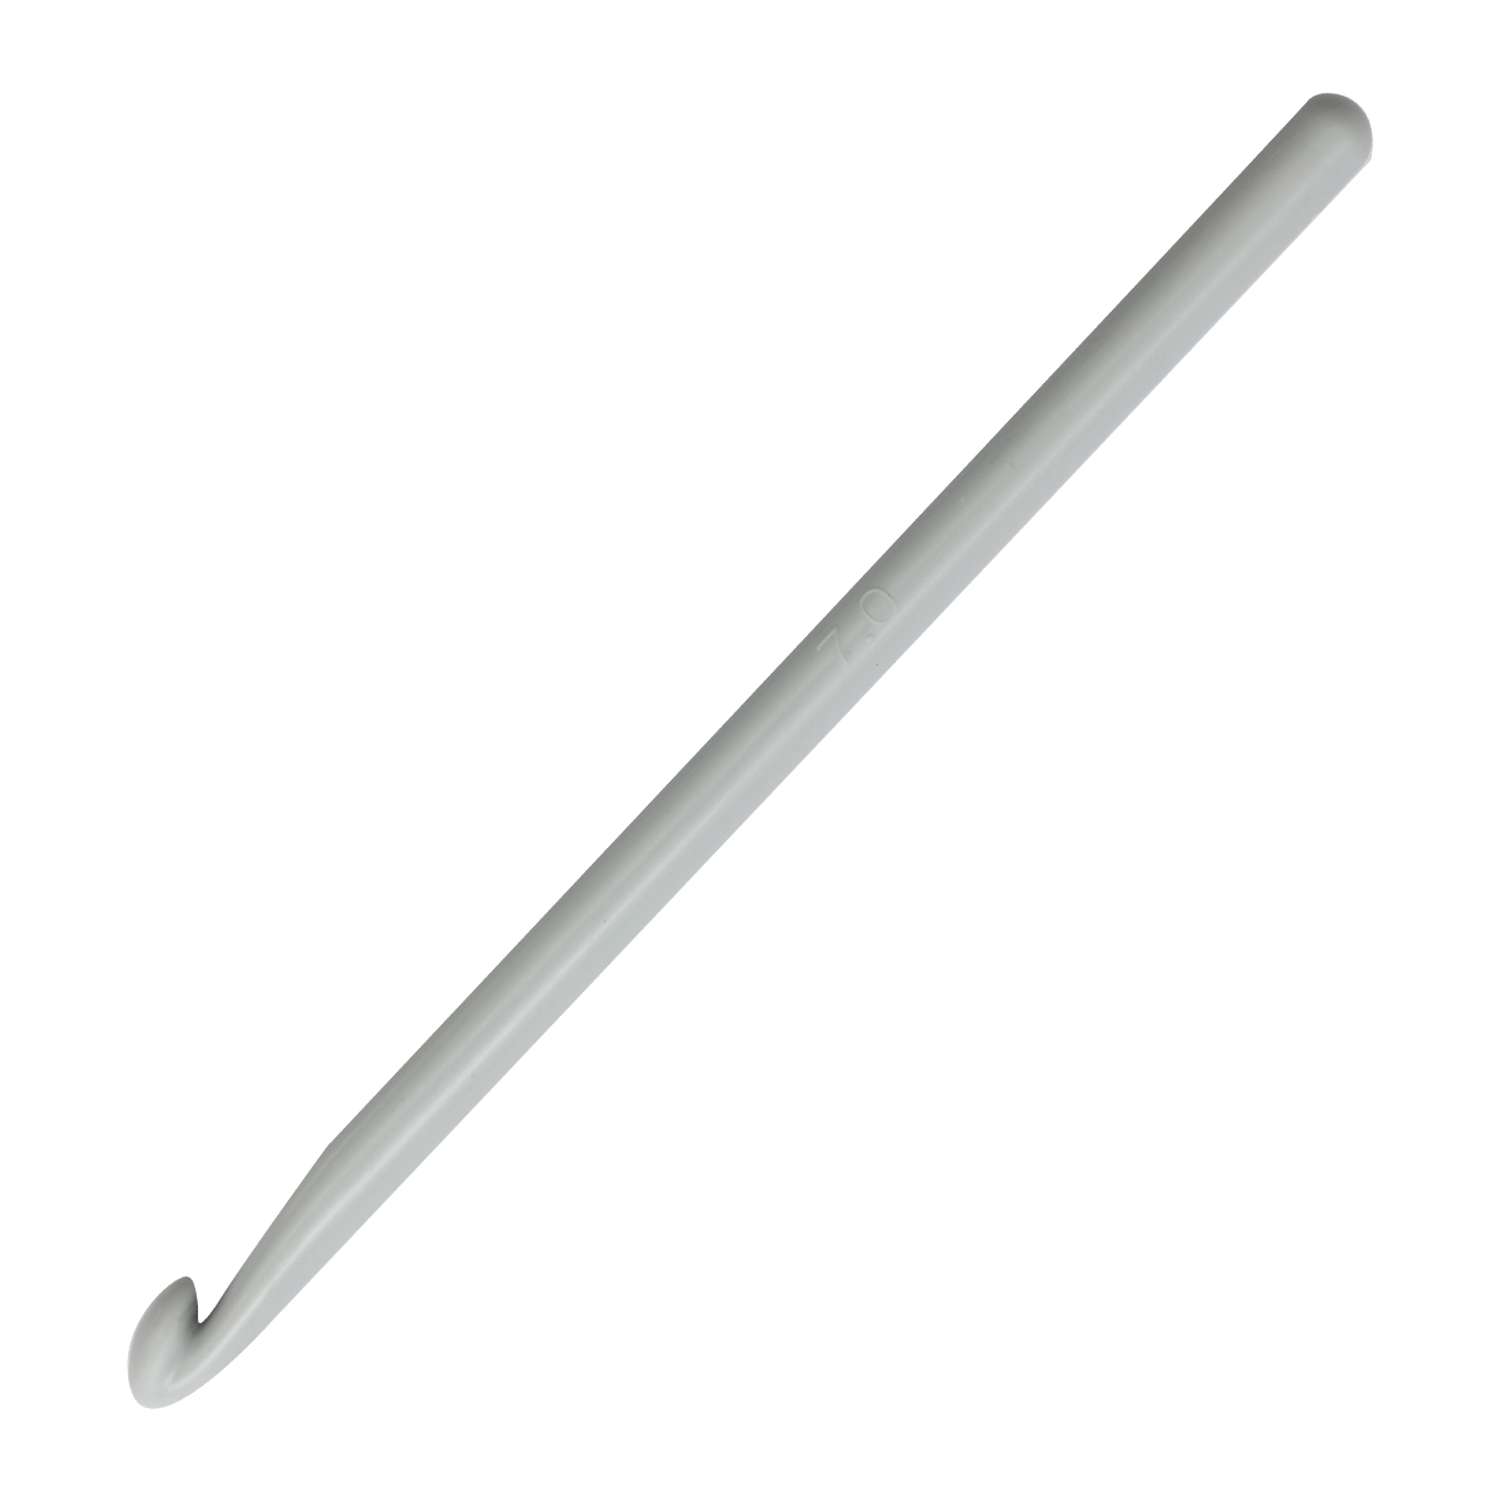 Крючок для вязания Prym пластиковый гладкий легкий для натуральной шерсти акрила 7 мм 14 см 218500 - фото 6